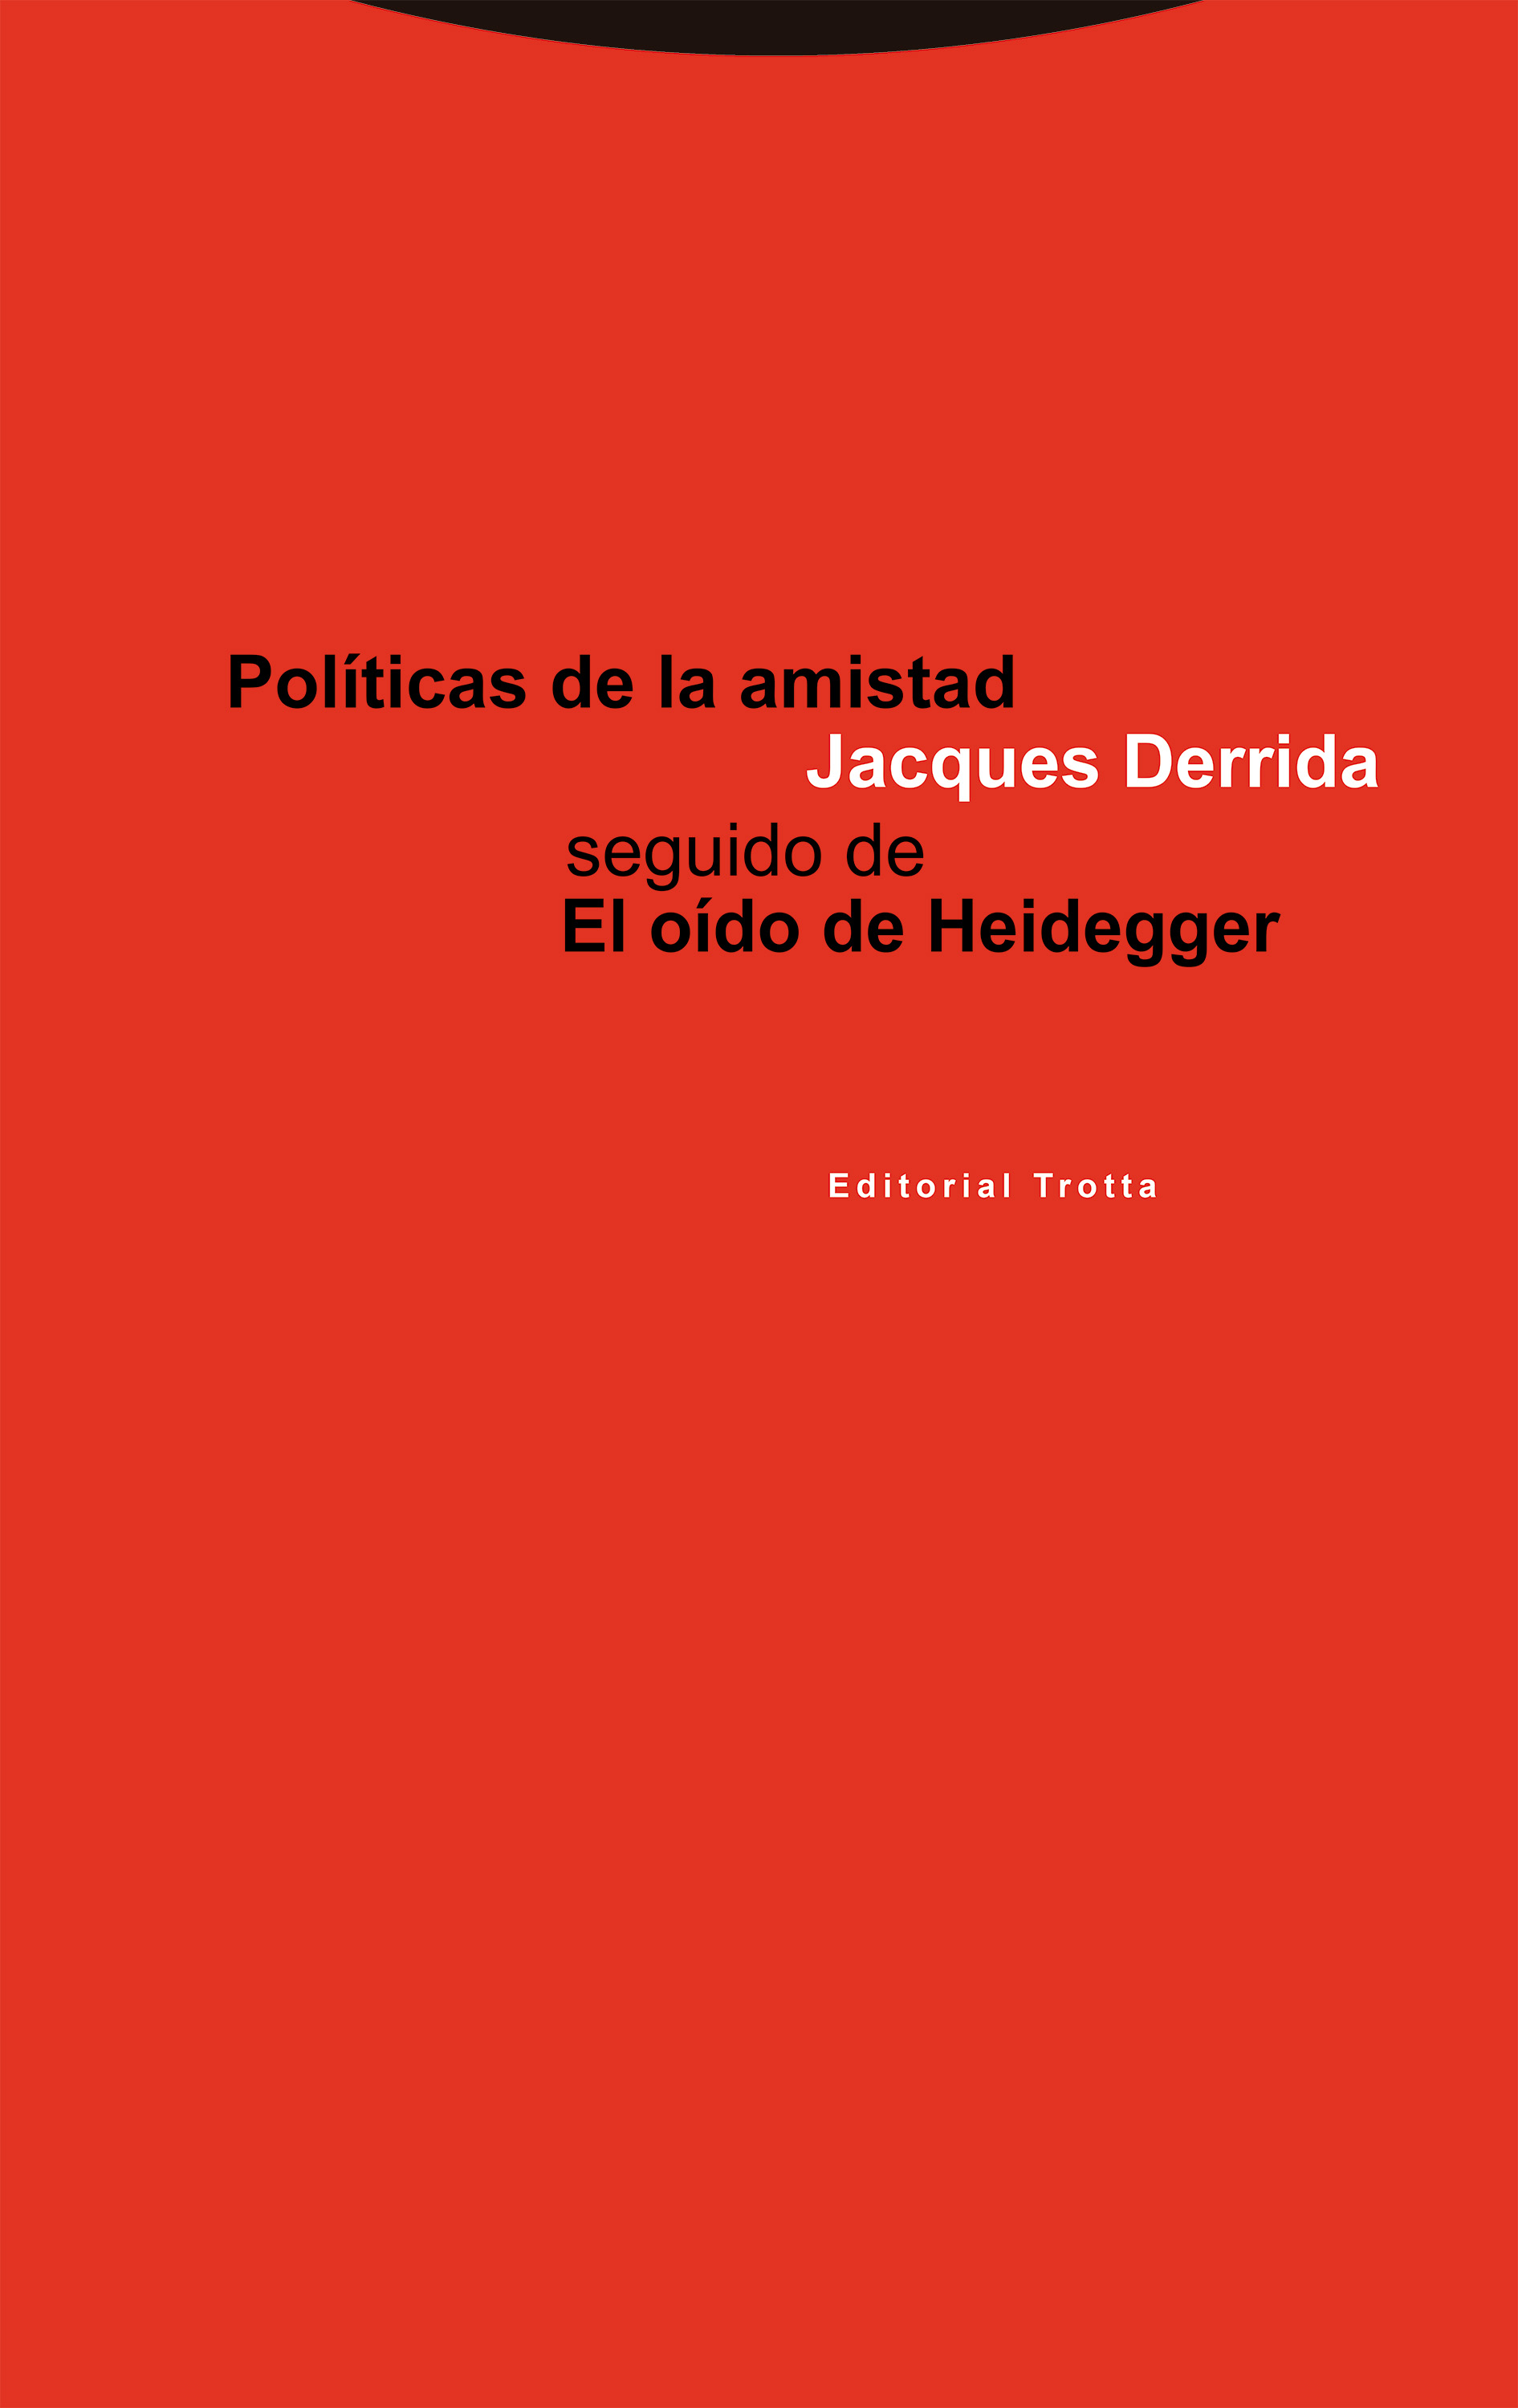 Campo de minas Buen sentimiento Rodeado Editorial Trotta Políticas de la amistad seguido de El oído de Heidegger |  Jacques Derrida | 978-84-8164-234-6